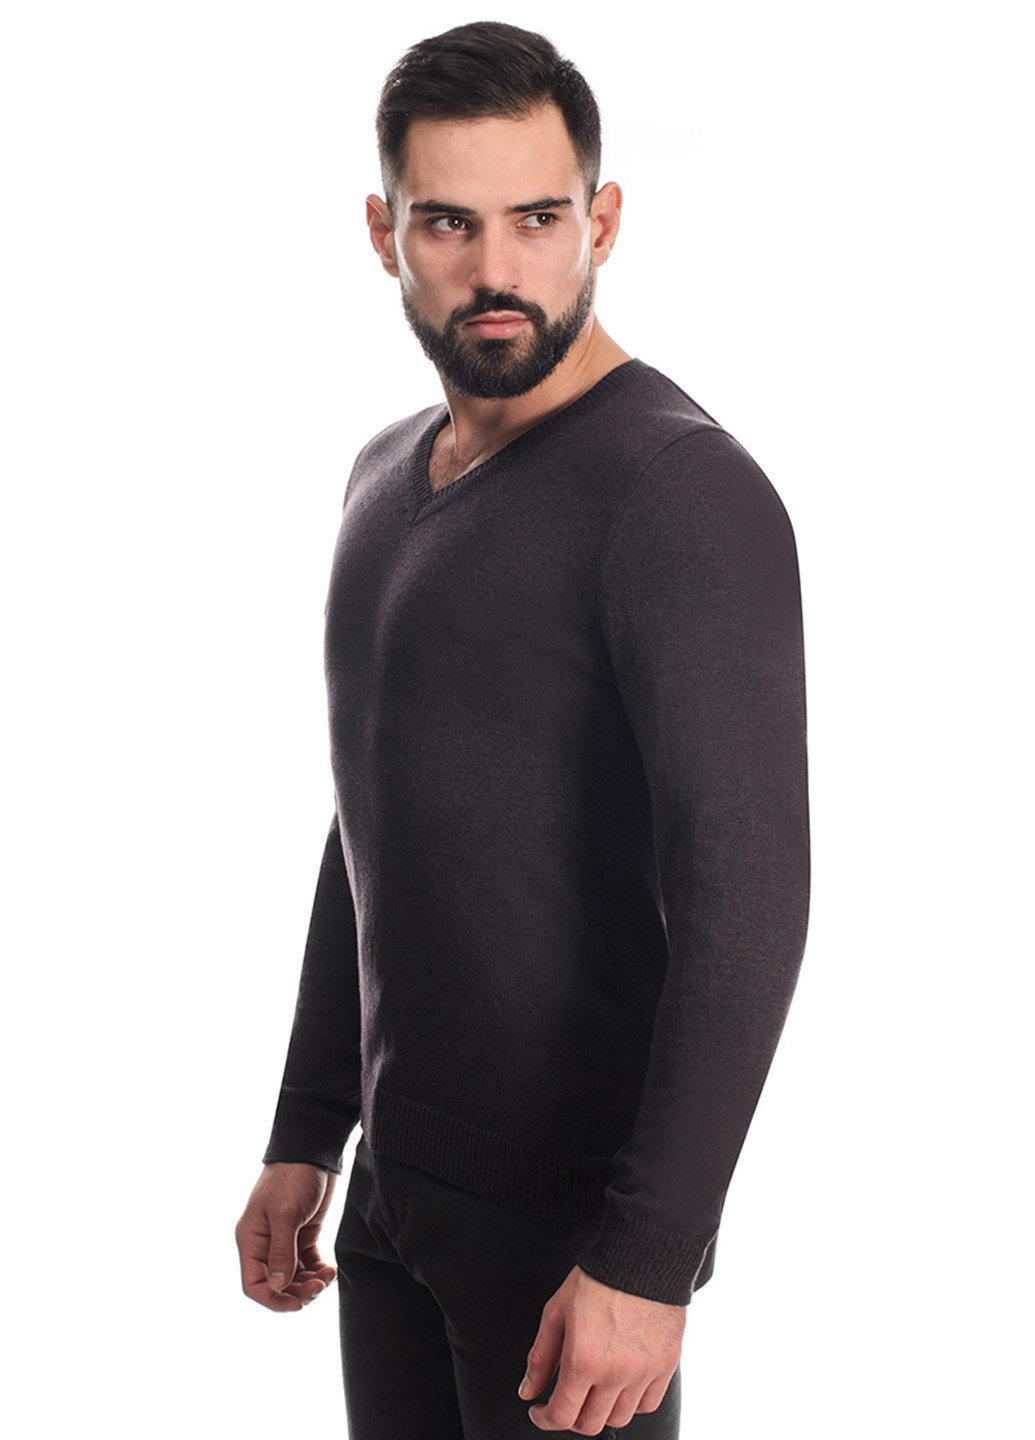 Коричневый демисезонный пуловер пуловер SVTR